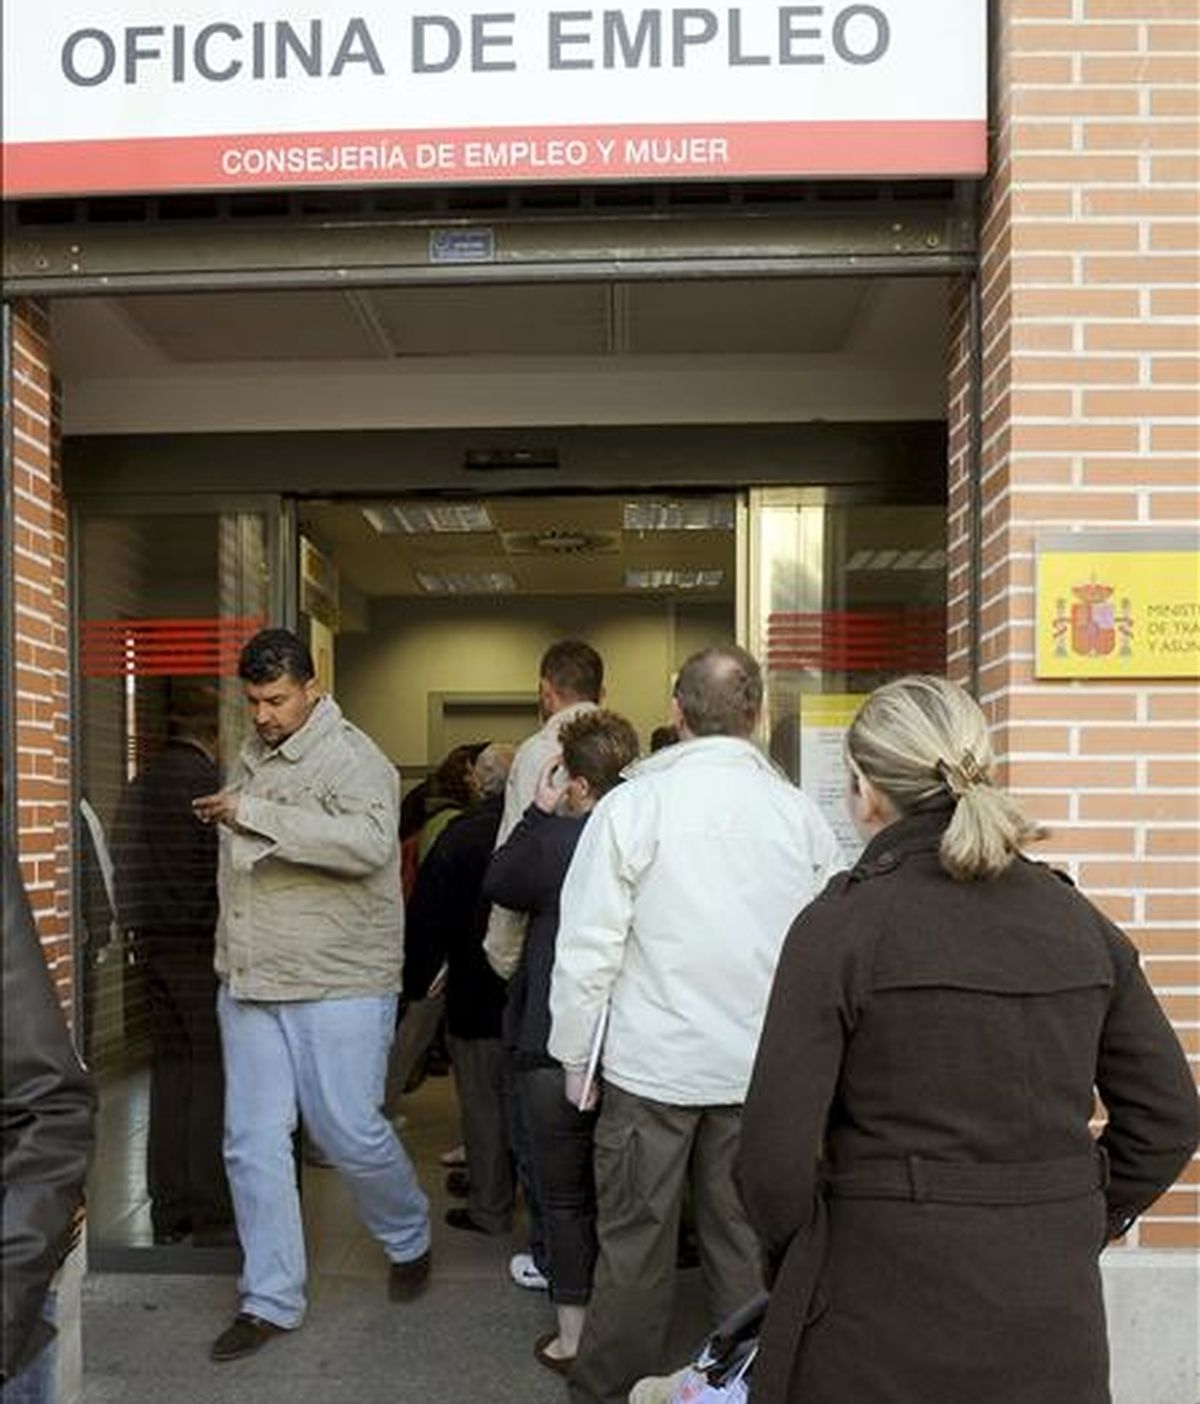 Desempleados hacen cola frente a una oficina de empleo hoy en Alcalá de Henares (Madrid). Las empresas deben valorar más la capacidad que la nacionalidad al contratar, según el 60% de los españoles. EFE